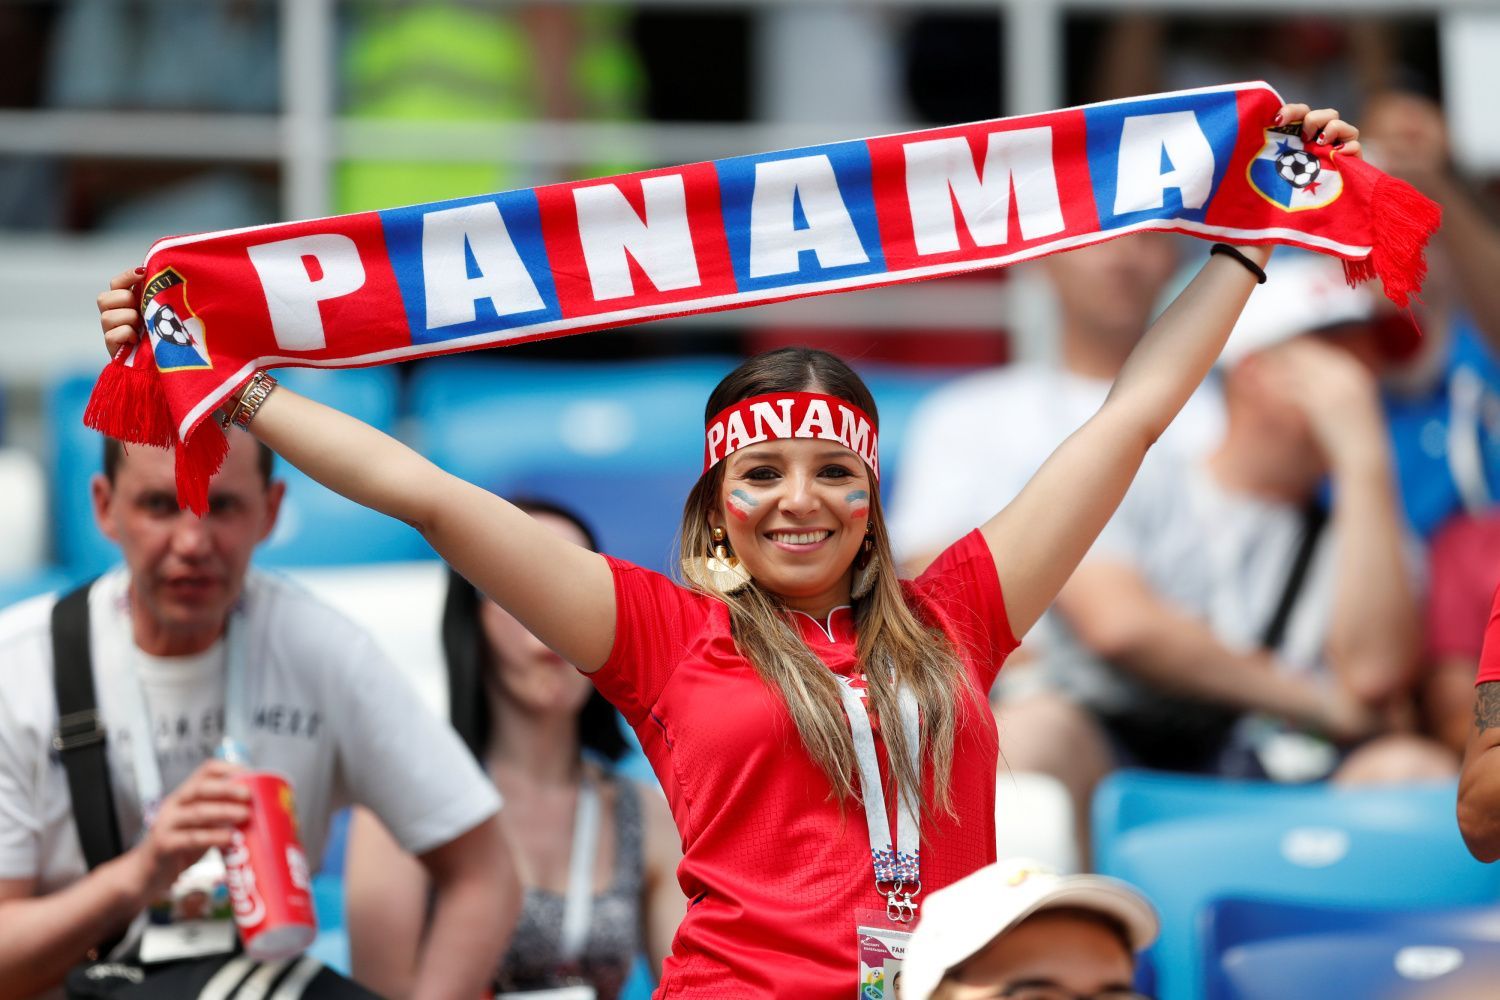 Panamská fanynka na zápase Anglie - Panama na MS 2018